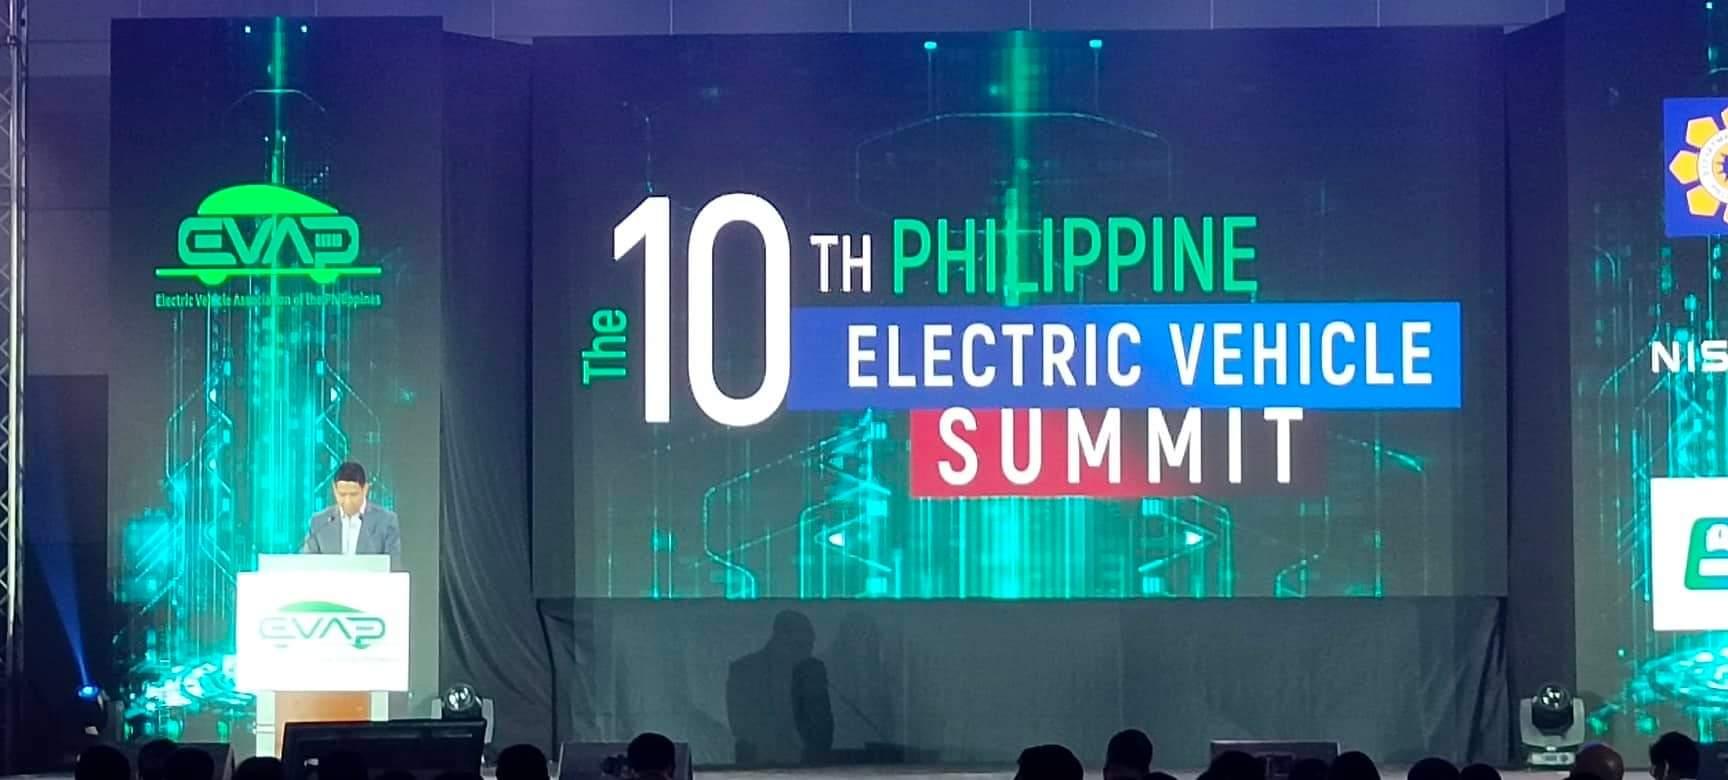 10th Philippine Electric Vehicle Summit, ikinasa DZIQ Radyo Inquirer